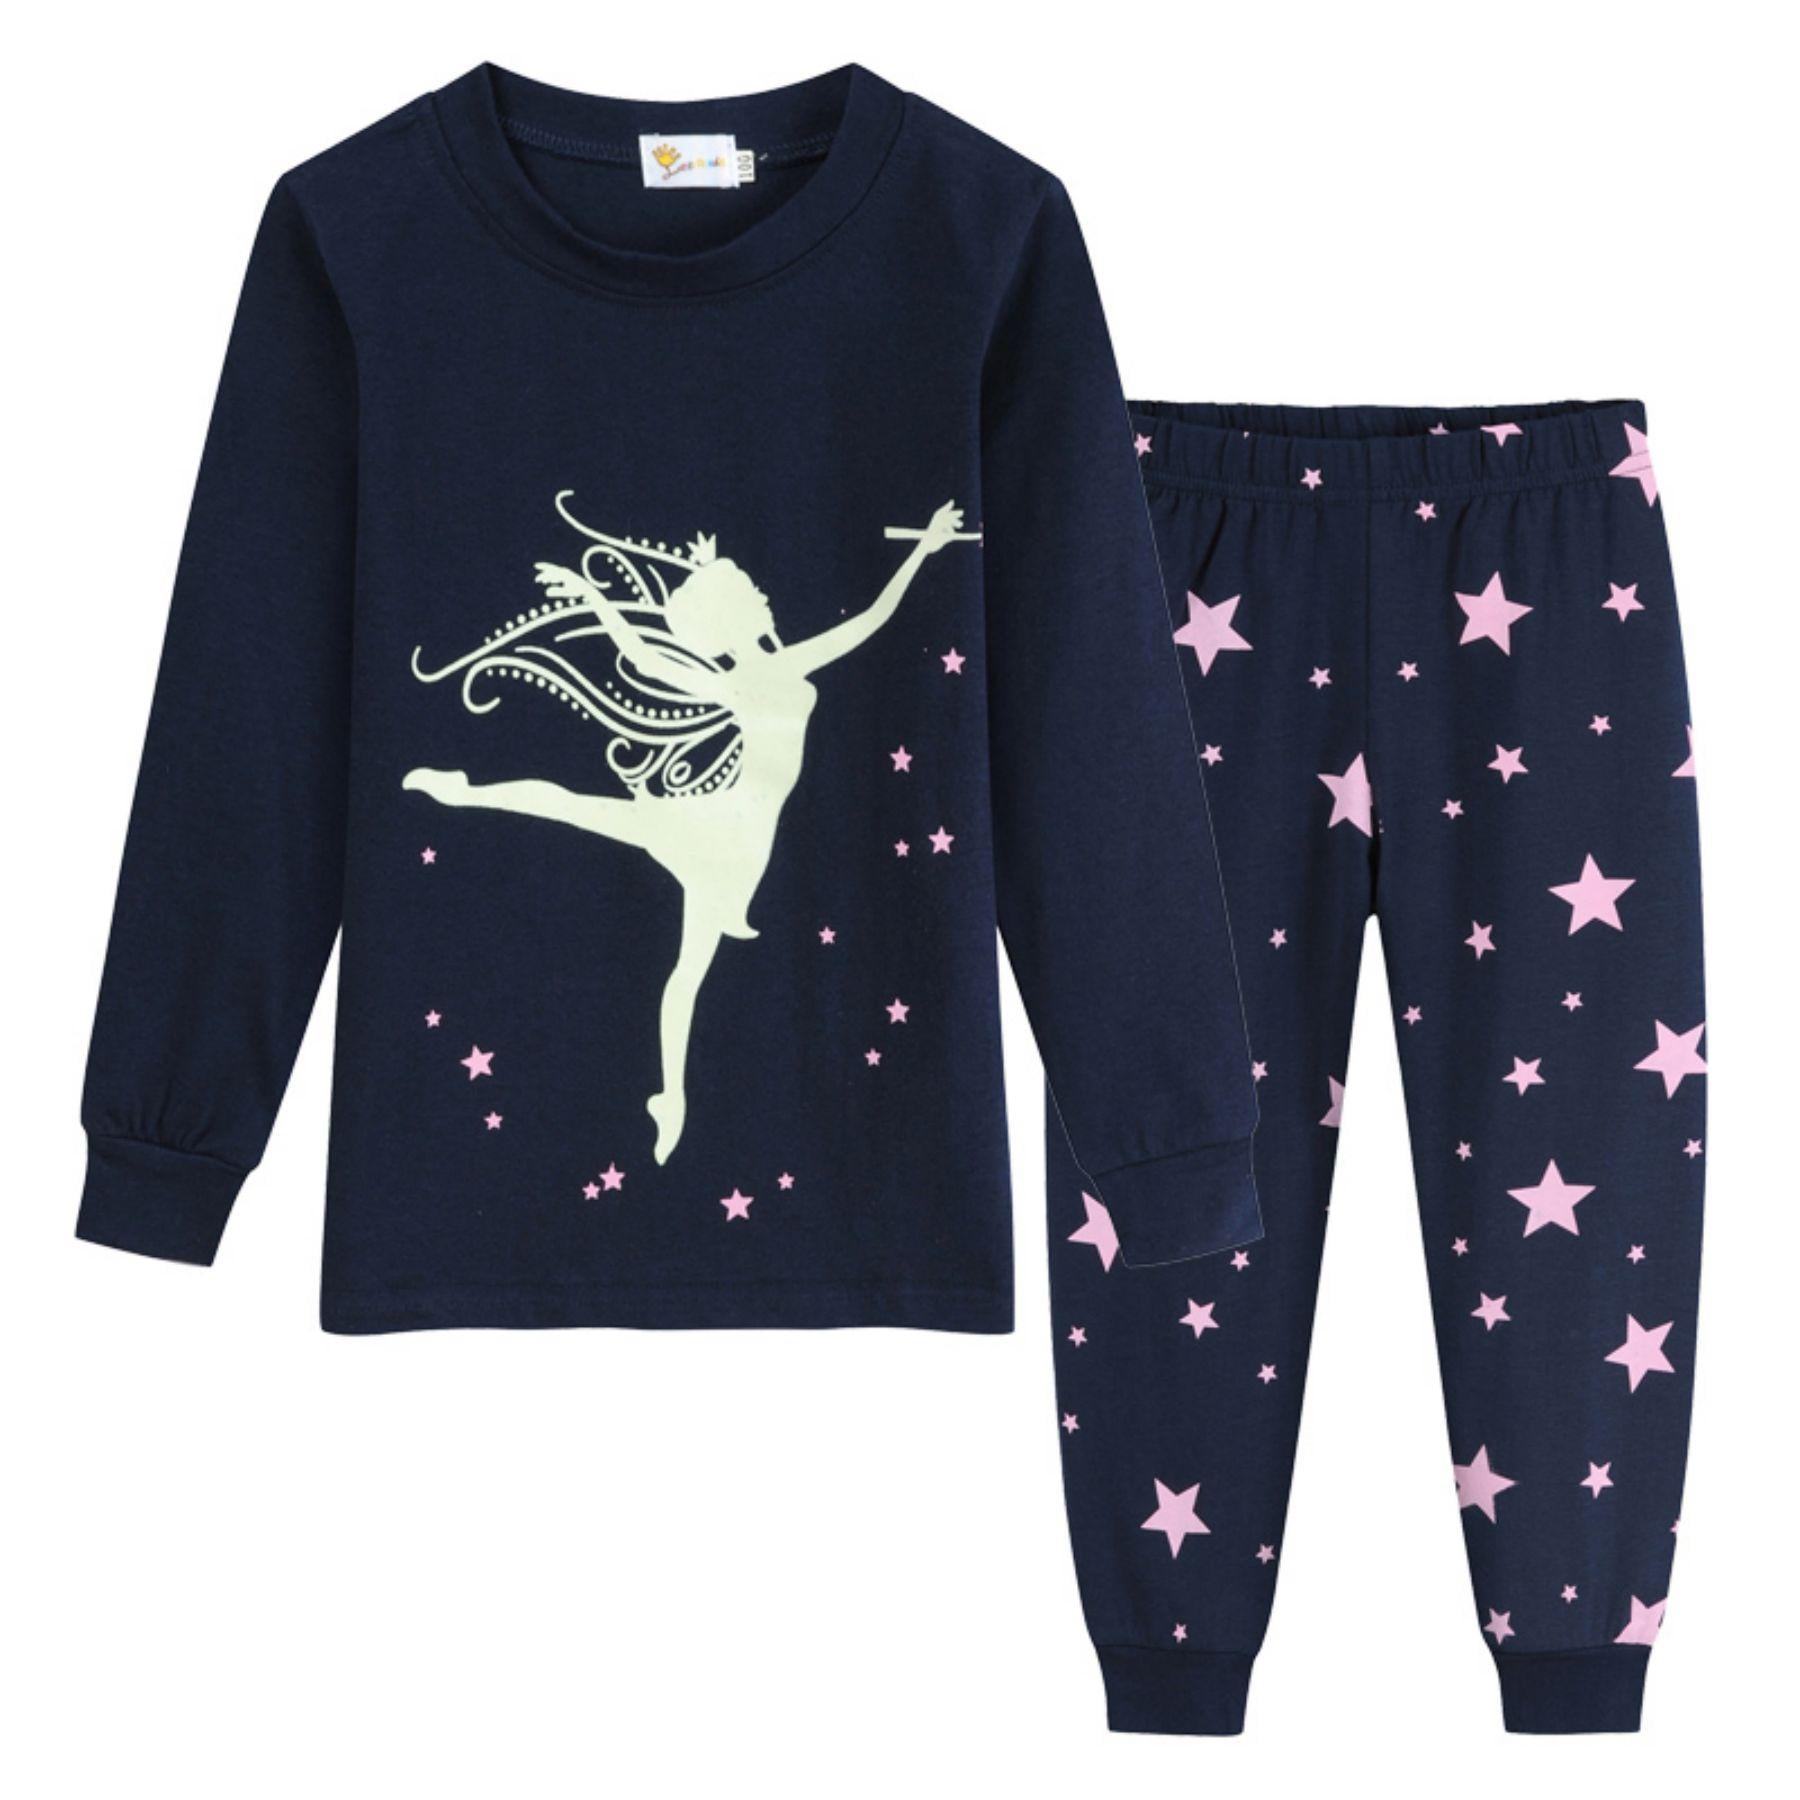 Prinkey Toddler Girl Pajamas Sets Ballet Long Sleeve Kids 2 Piece Pjs Sets 100% Cotton Sleepwear 